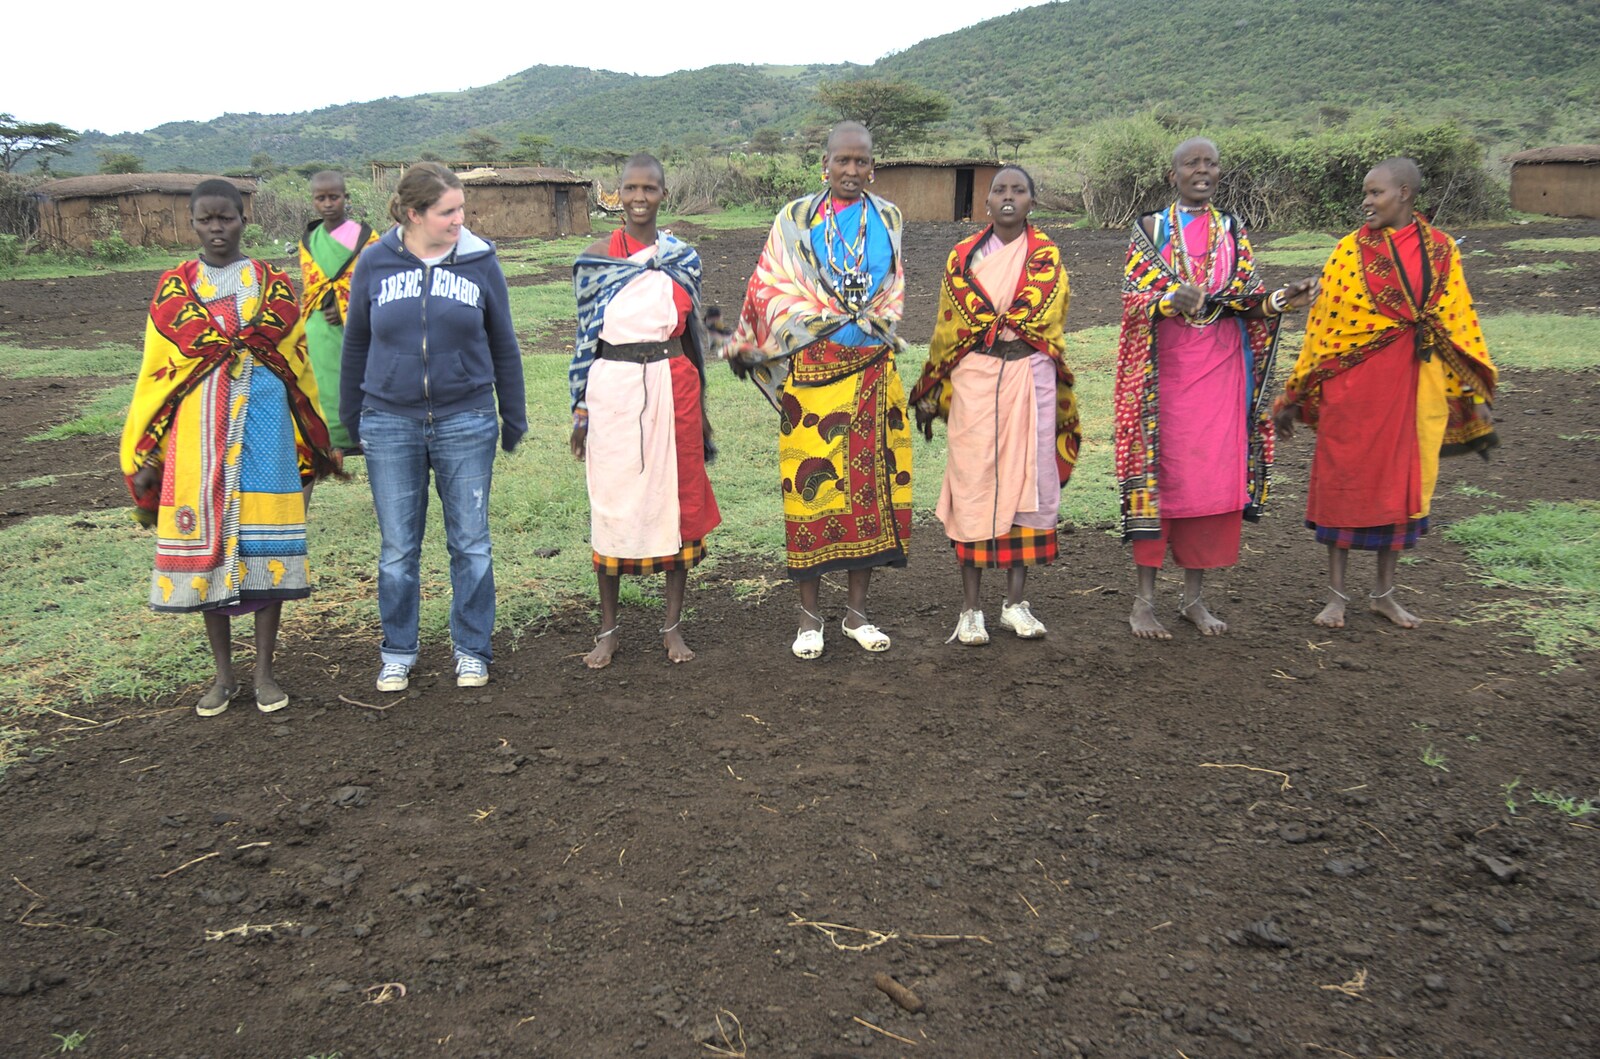 Maasai Mara Safari and a Maasai Village, Ololaimutia, Kenya - 5th November 2010: Isobel is invited to join in